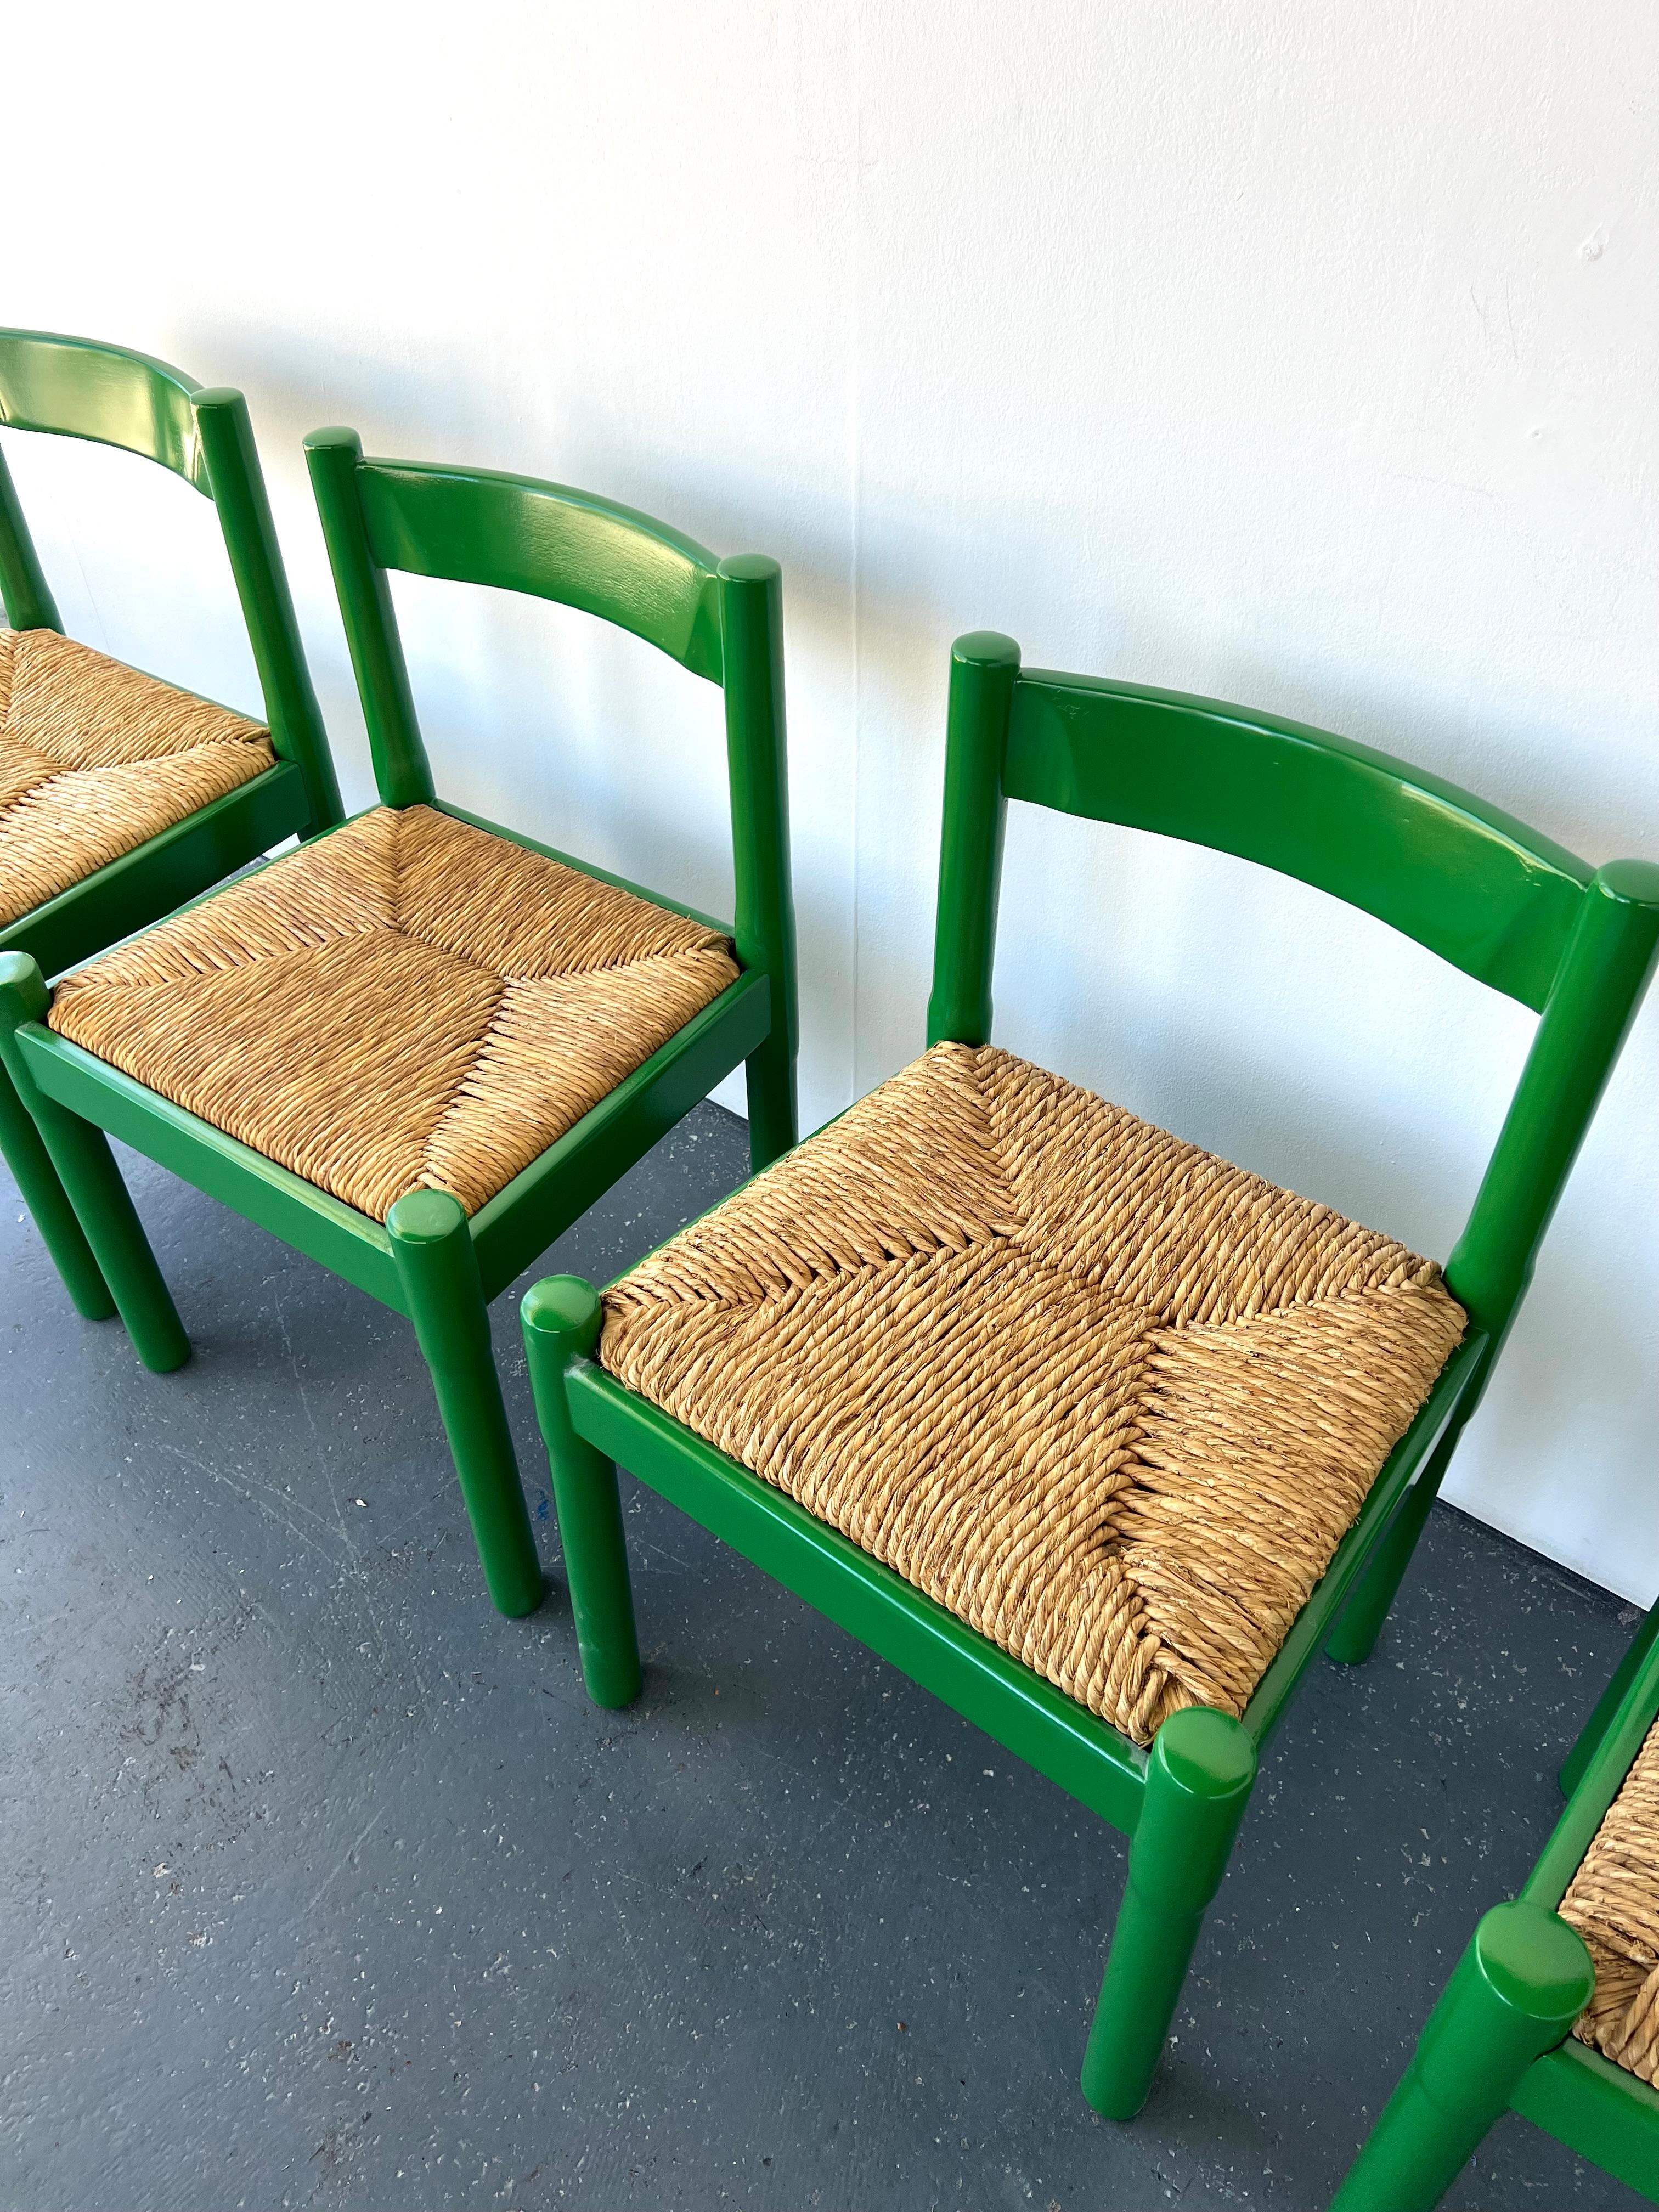 Lot de x6 chaises Carimate Carver vertes brillantes par Vico Magistretti

La chaise Carimate est née lorsque Vico Magistretti (1920-2006) a conçu des sièges pour le club de golf Carimate en Italie en 1959. Le design, qui combine l'artisanat italien